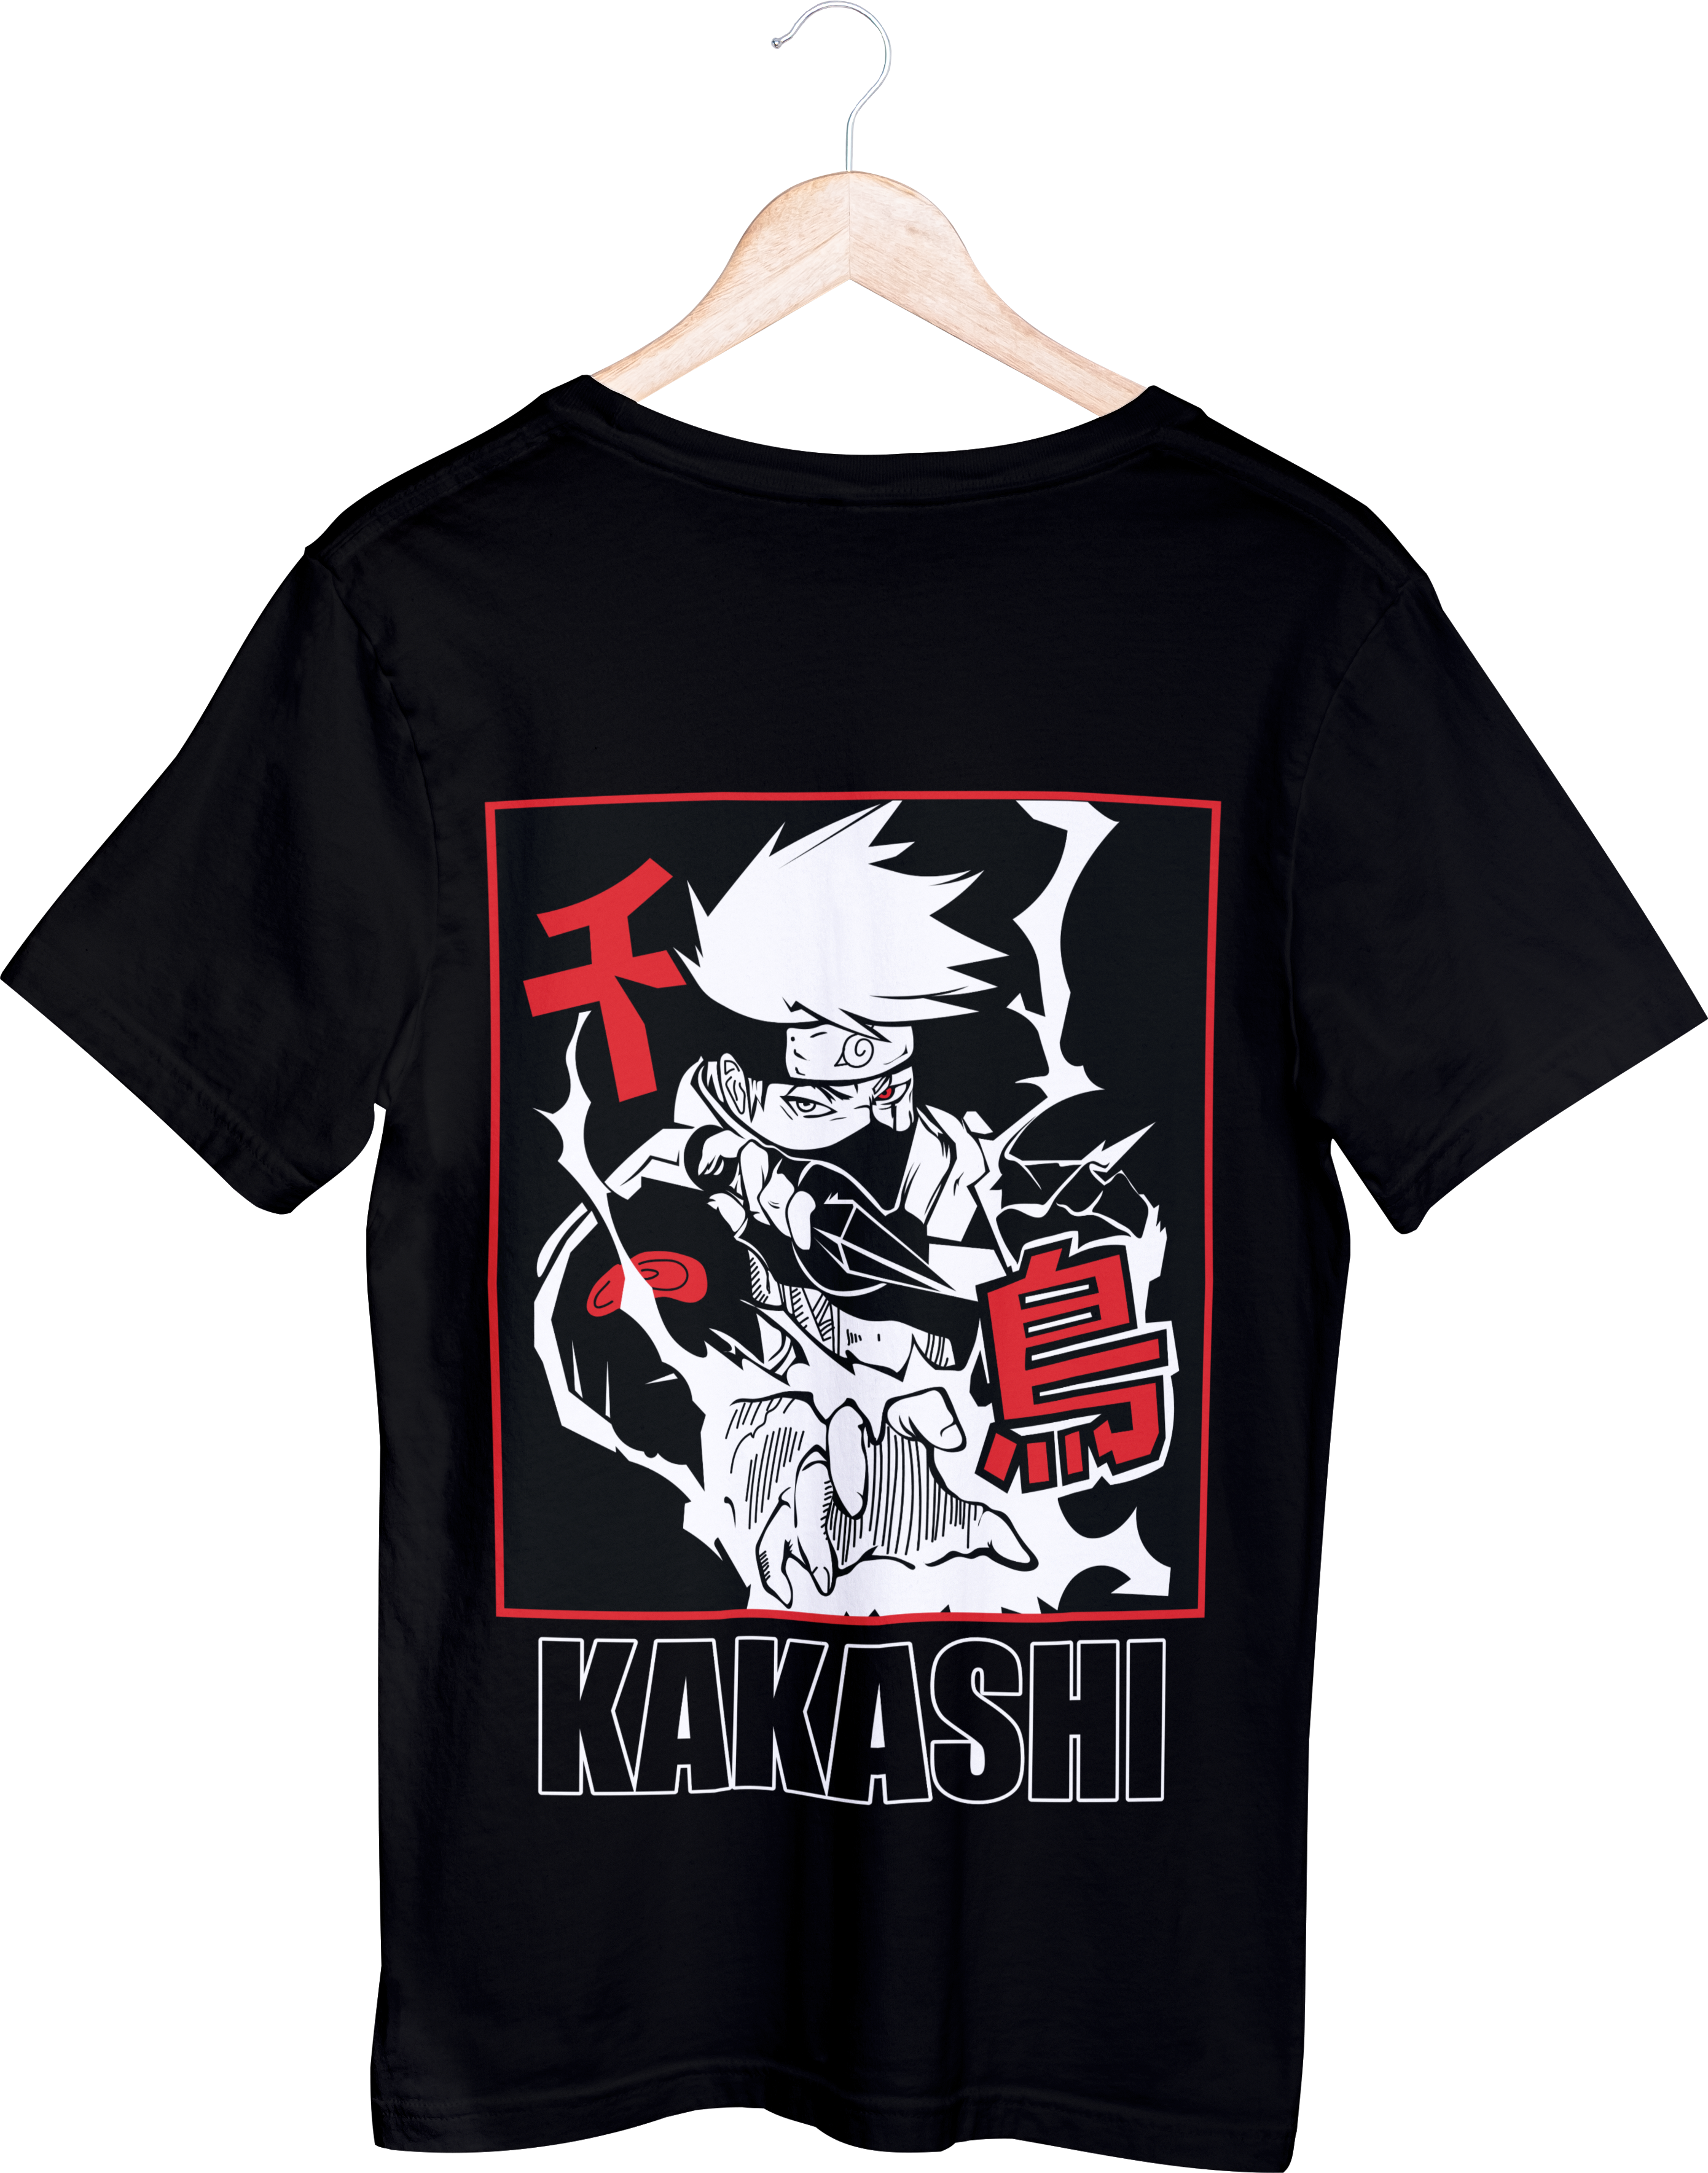 Naruto Tops - חולצה קאקאשי צ'ידורי וקונאי - נארוטו